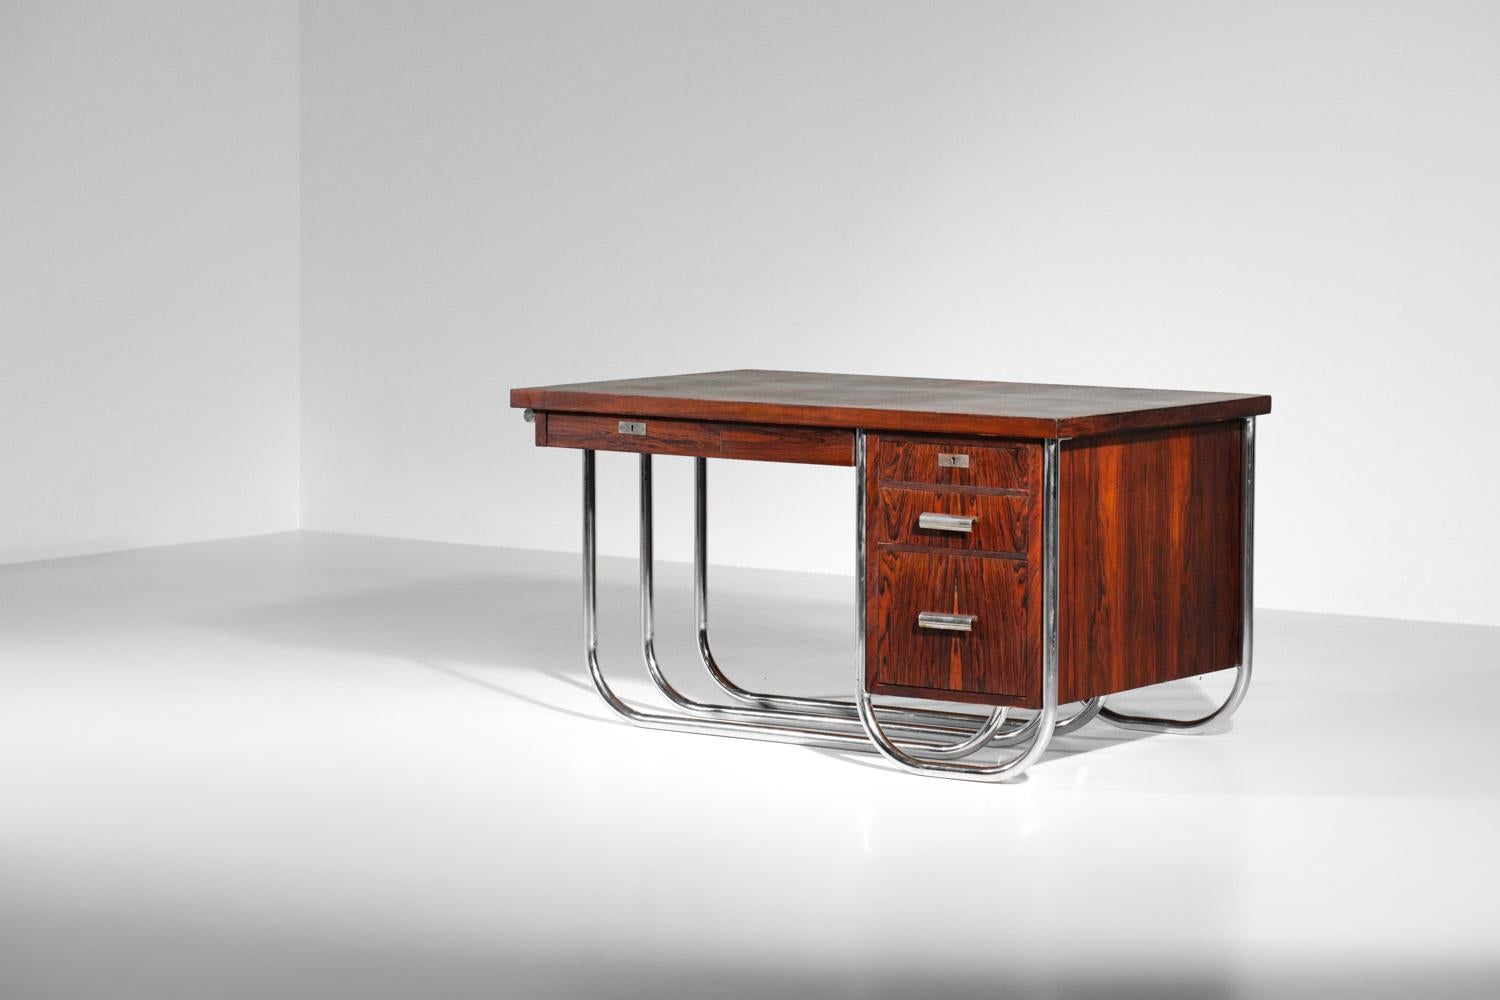 Französischer Schreibtisch aus den 40er / 50er Jahren im modernistischen Bauhaus-Stil. Die Struktur des Schreibtischs aus furniertem und massivem Rio-Palisander mit einem dreifachen verchromten Stahlrohrsockel ist sehr selten. Der Schreibtisch